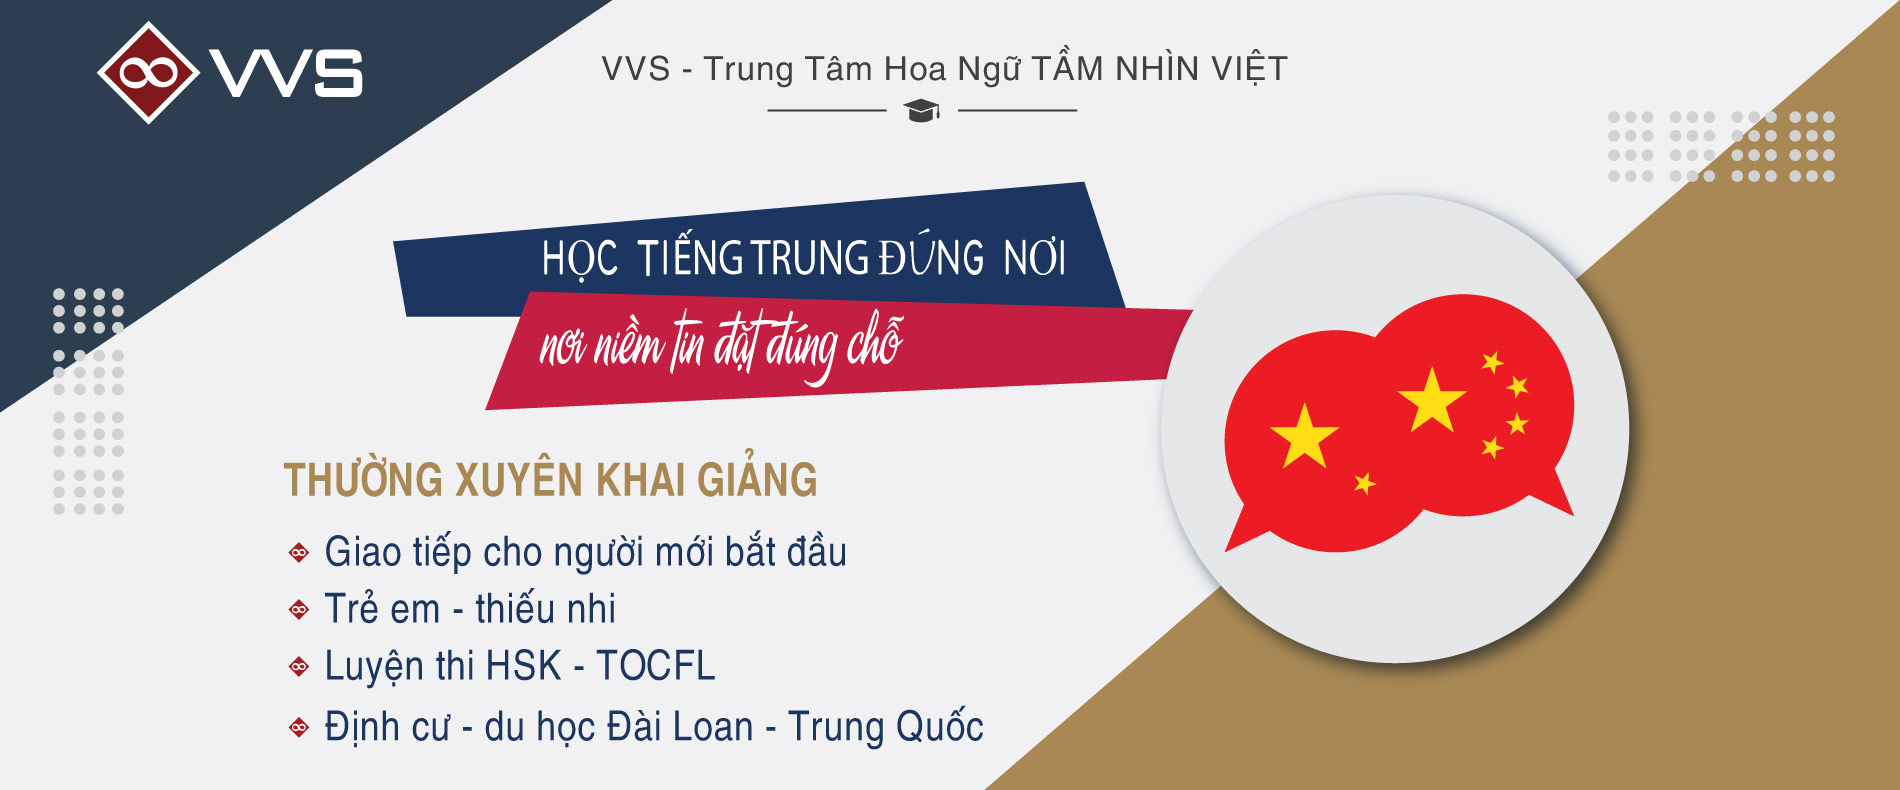 Banner Hoa Ngữ Tầm Nhìn Việt